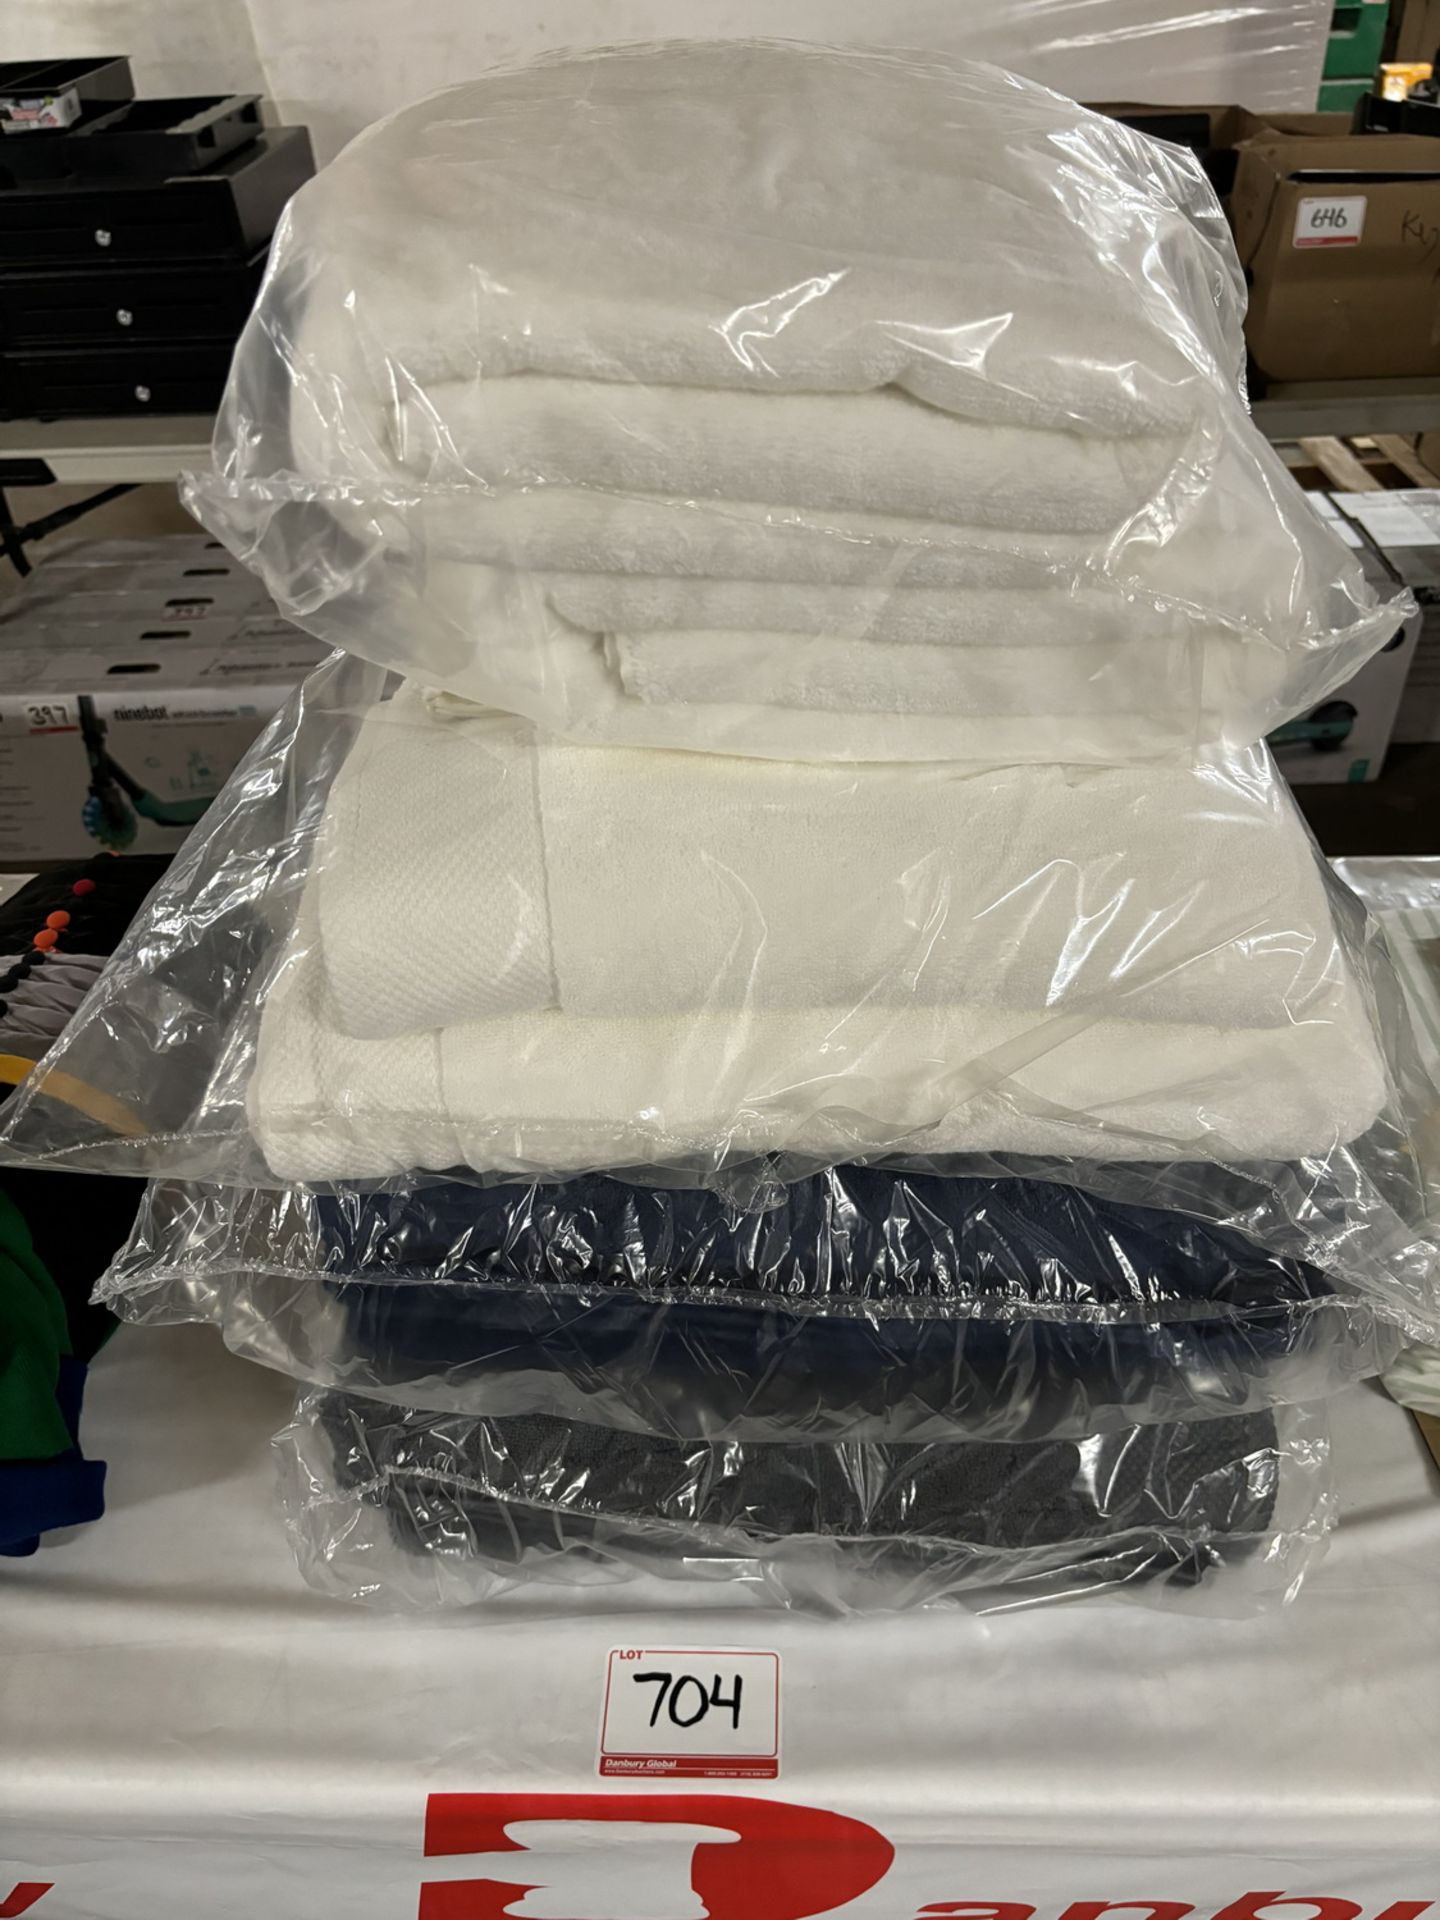 LOT - ENVELLO TOWEL BUNDLE - WHITE (2 BATH SHEETS, 2 BATH TOWELS, 2 HAND TOWELS, AND 2